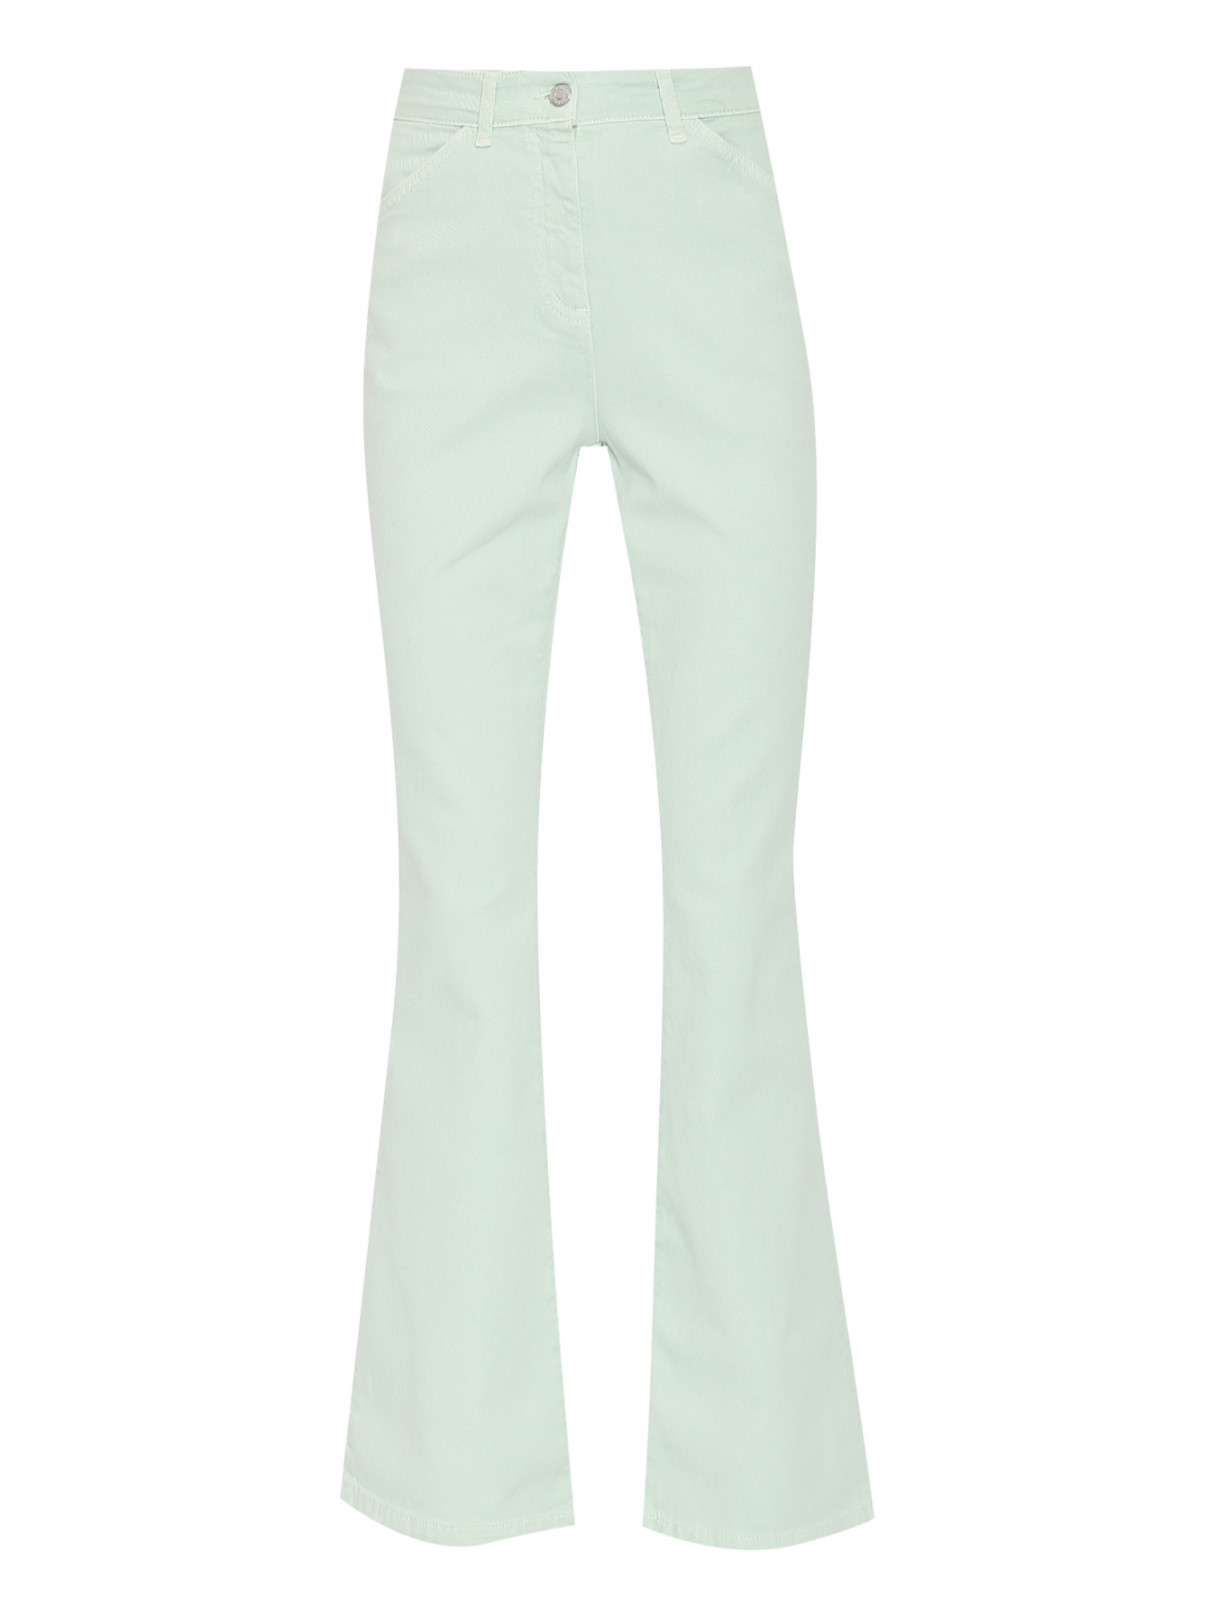 Расклешенные джинсы из хлопка с карманами Max&Co  –  Общий вид  – Цвет:  Зеленый